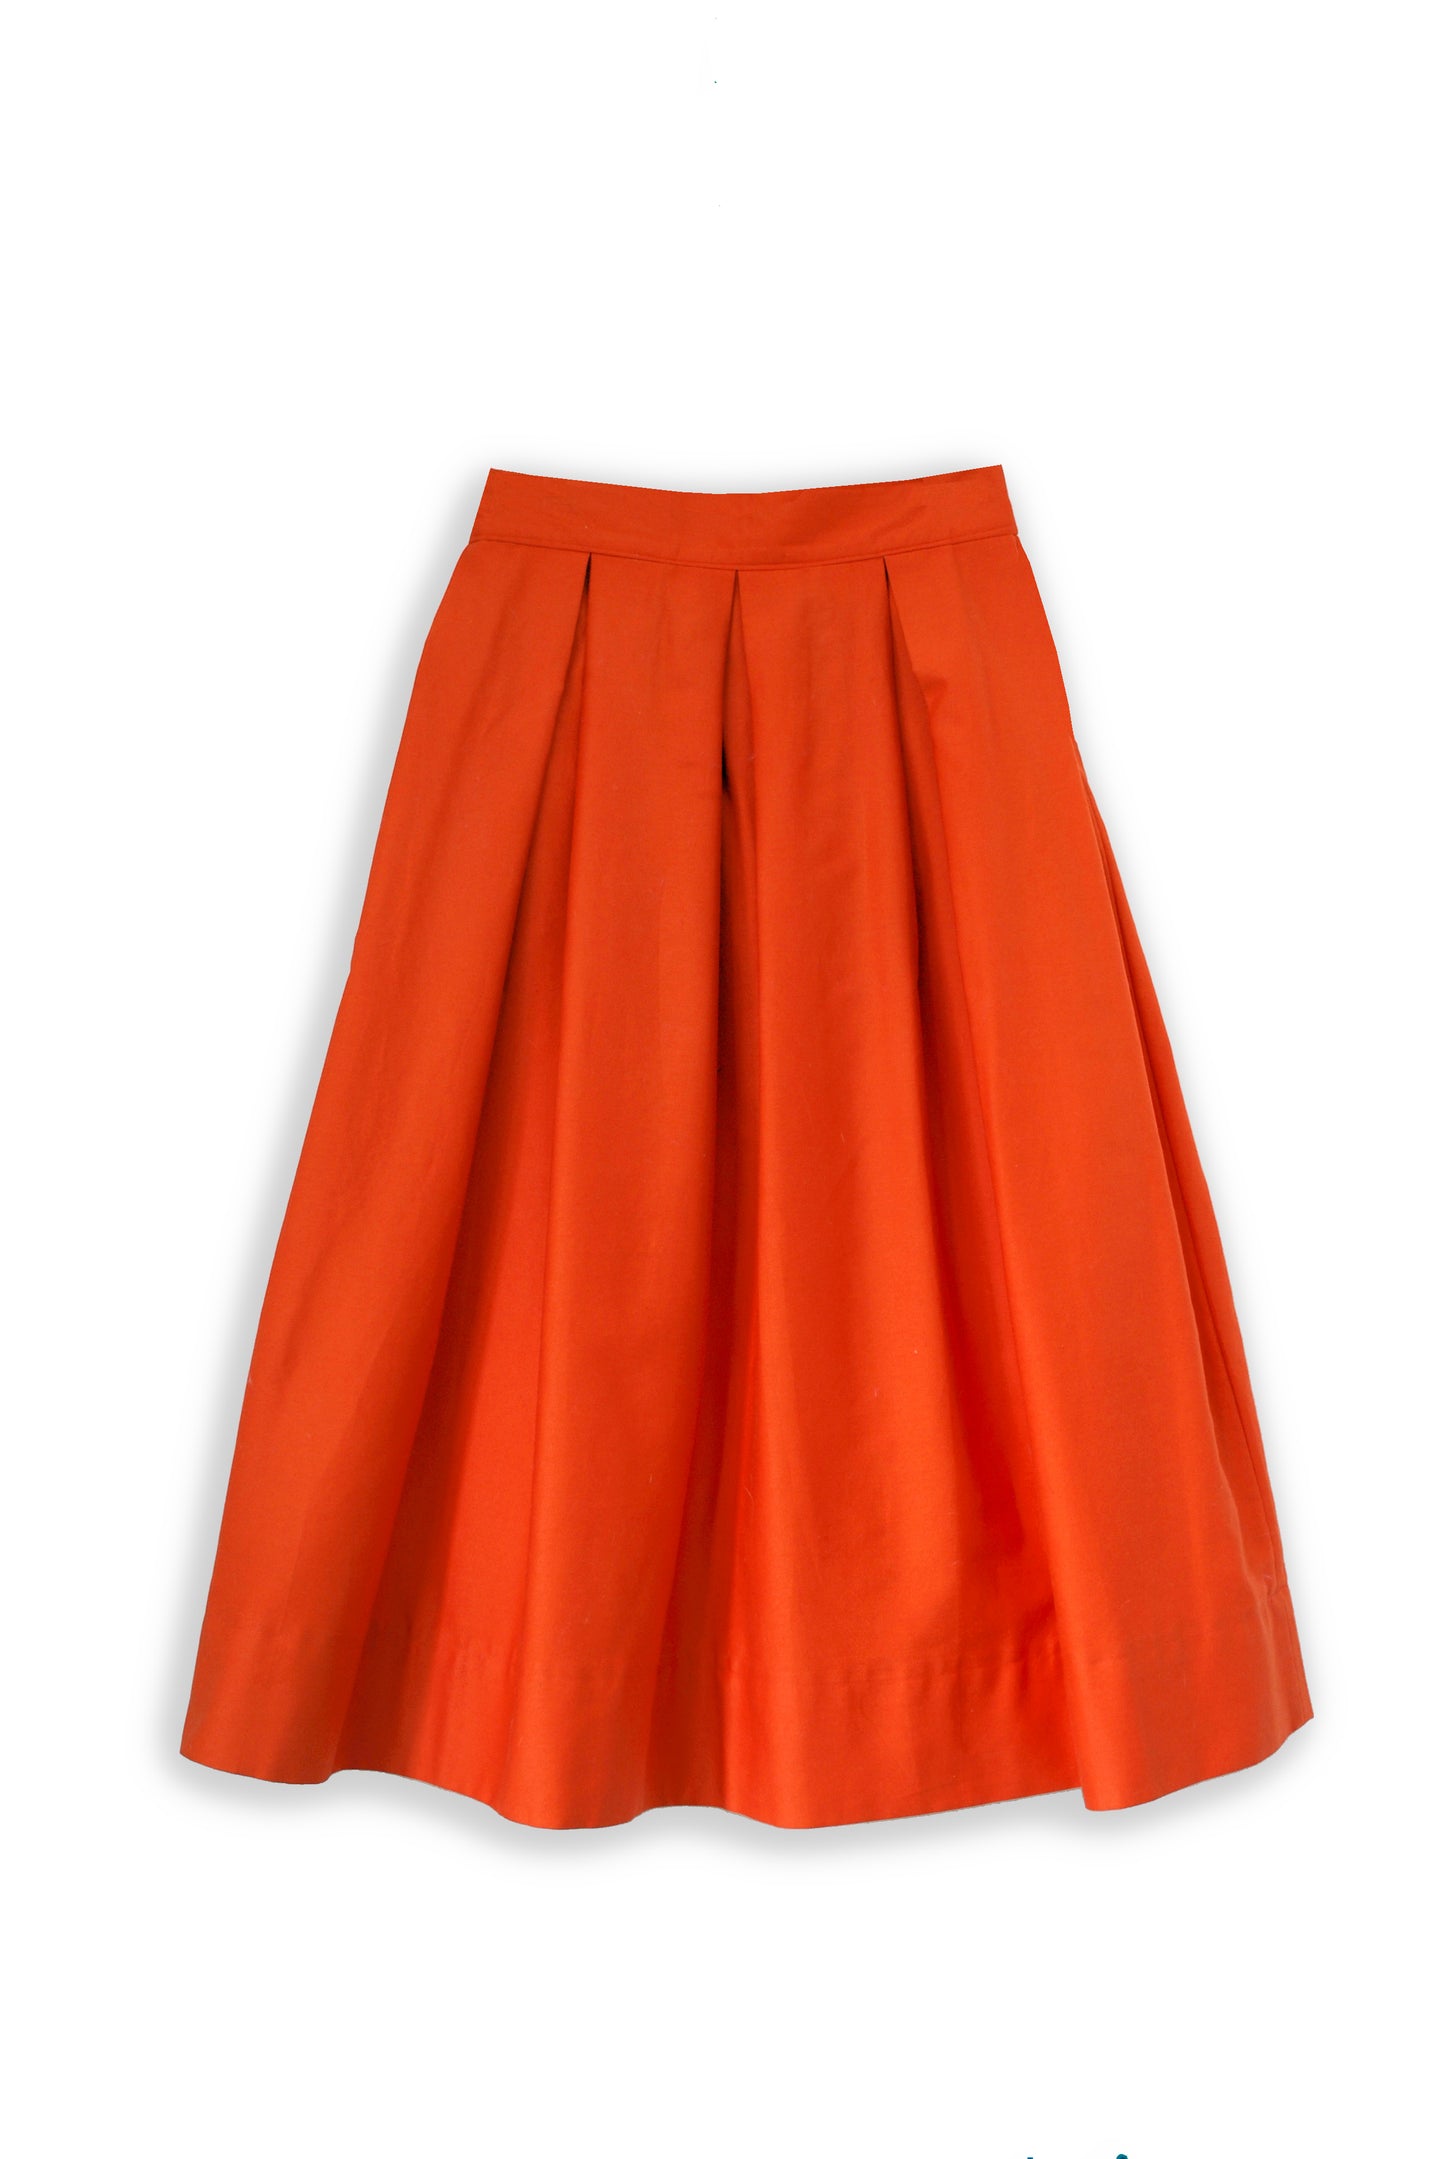 Diane full volume skirt in Clementine